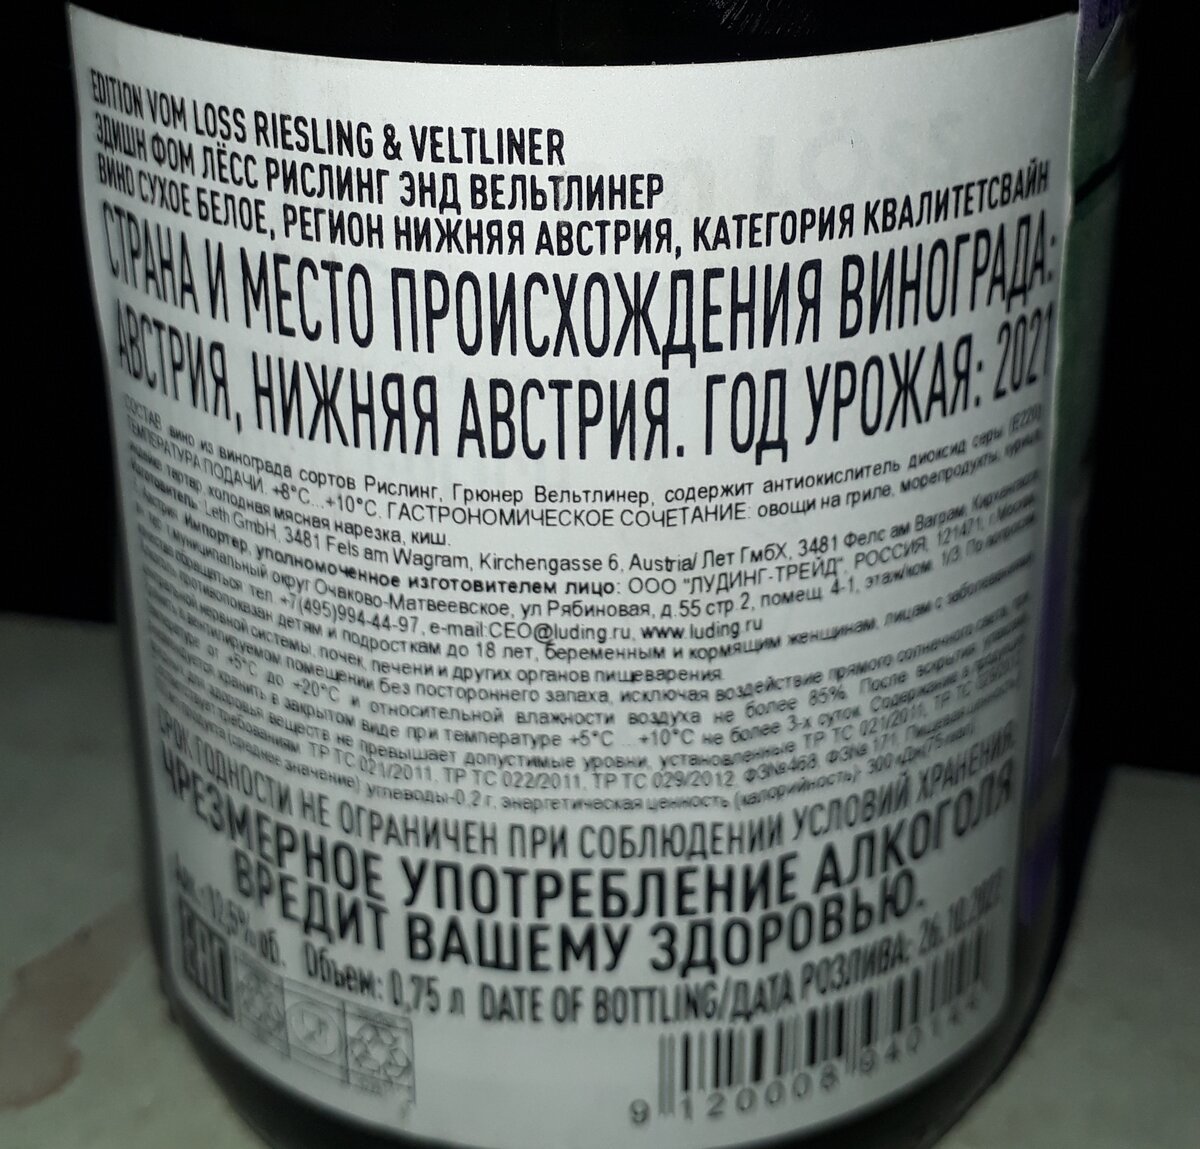 Вино с распродажи в "Красное и белое". Edition Vom Loss за 349 рублей